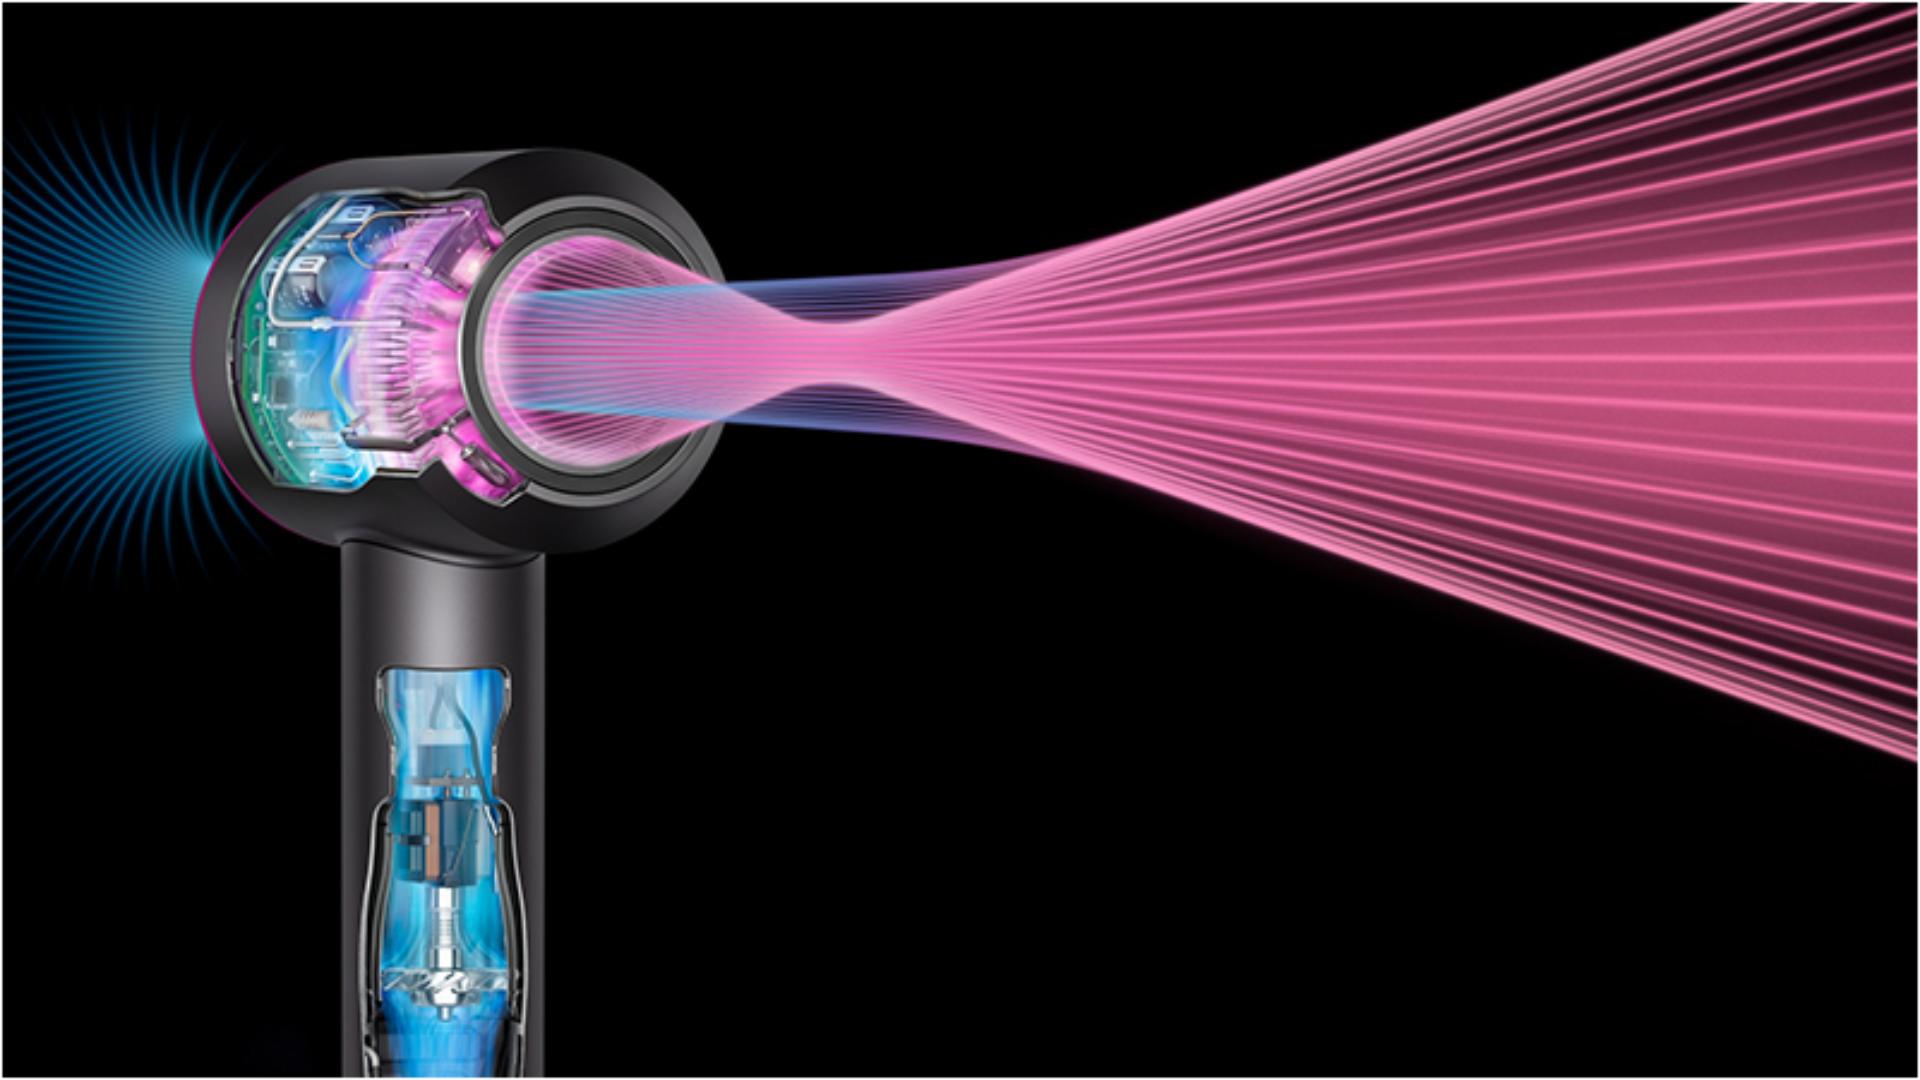 תצלום רנטגן של מייבש שיער Dyson Supersonic‎ עם זרימת אוויר